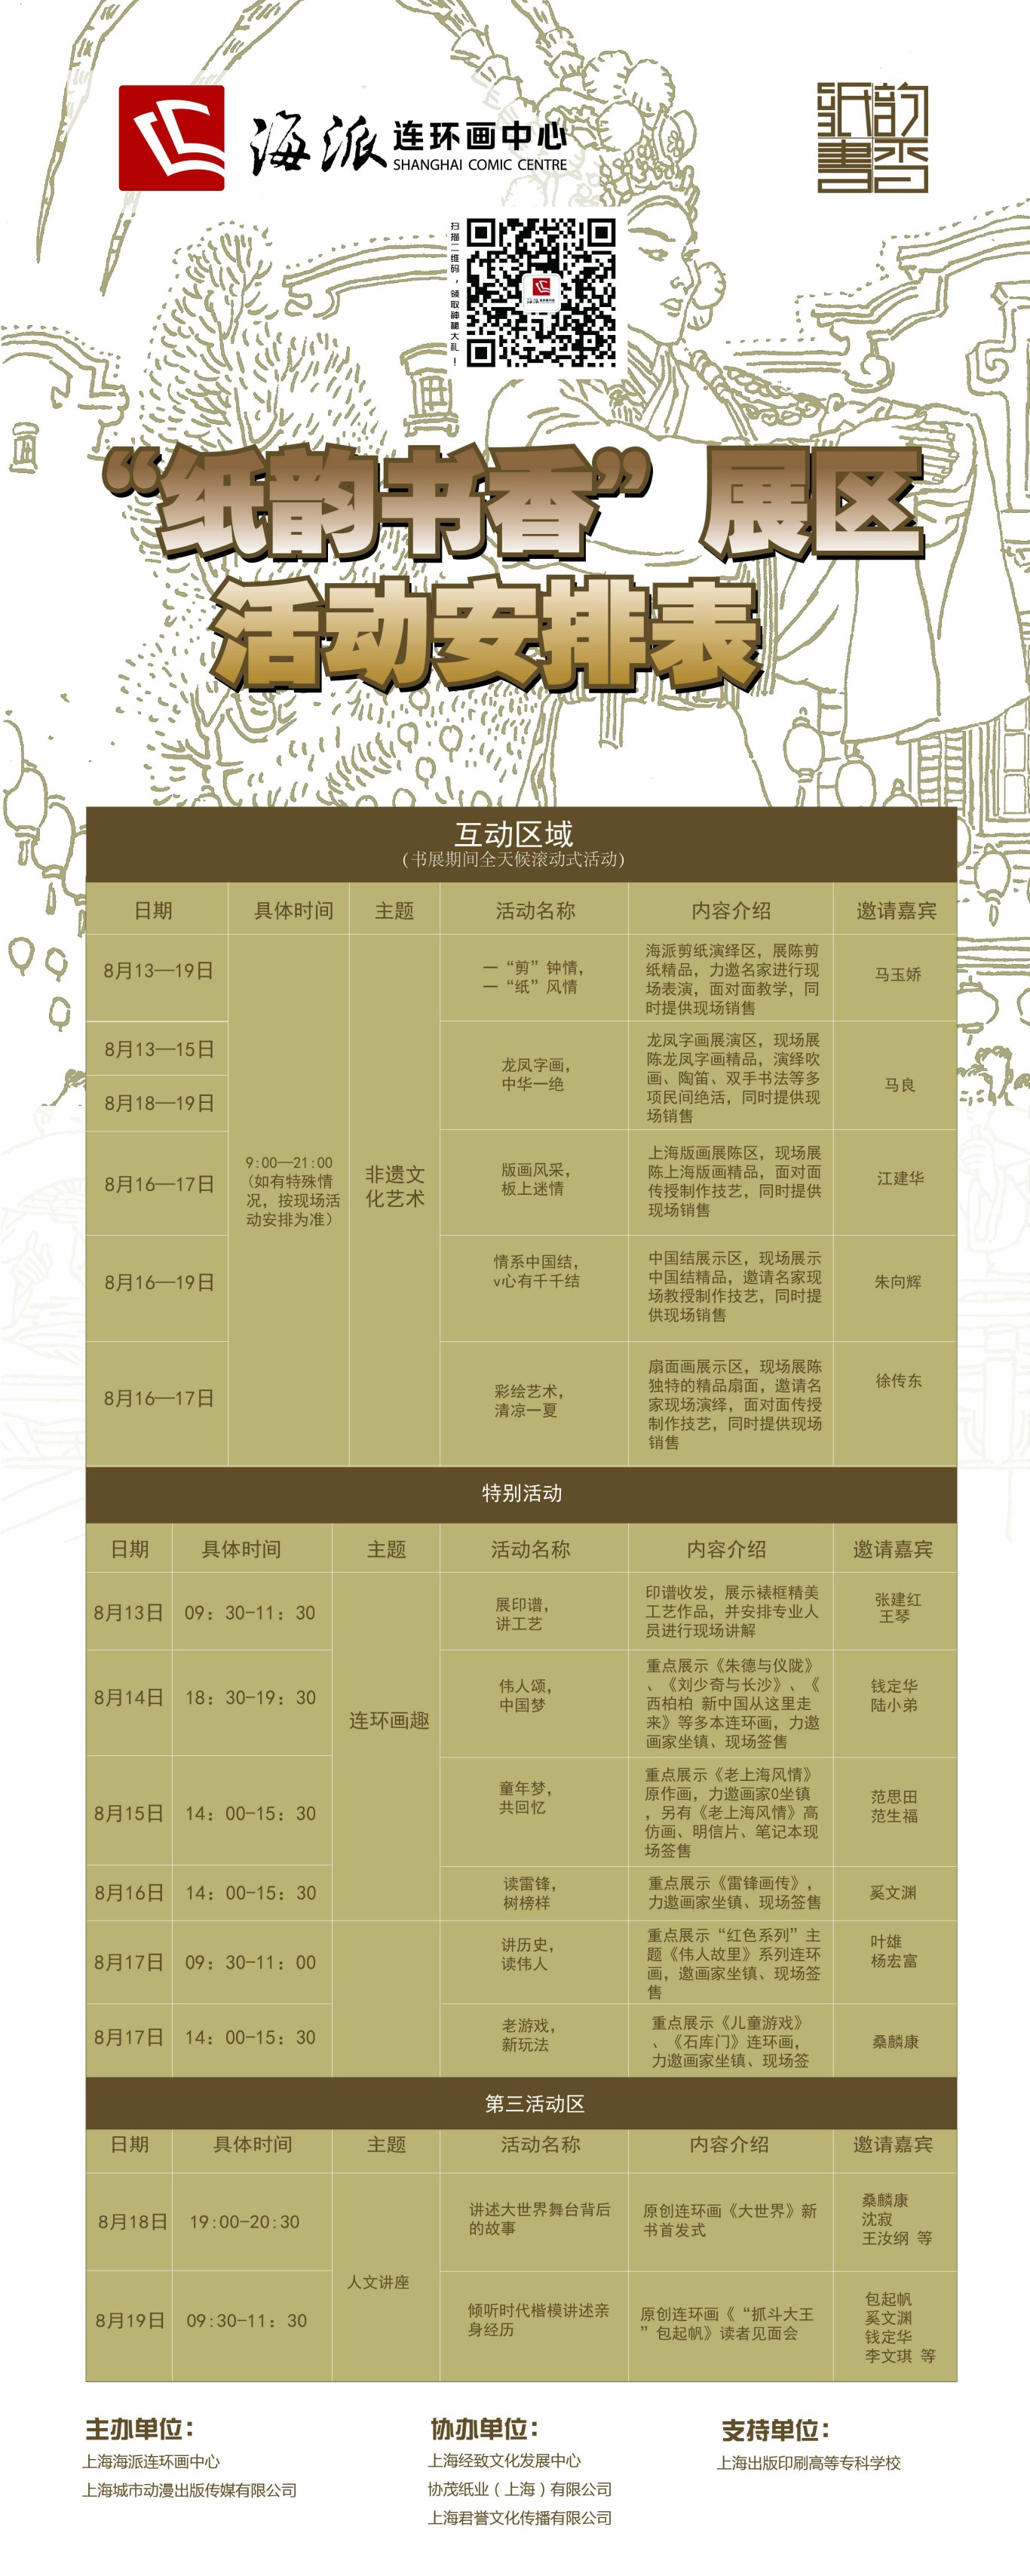 2014年上海书展“纸韵书香”展区logo等平面设计图0